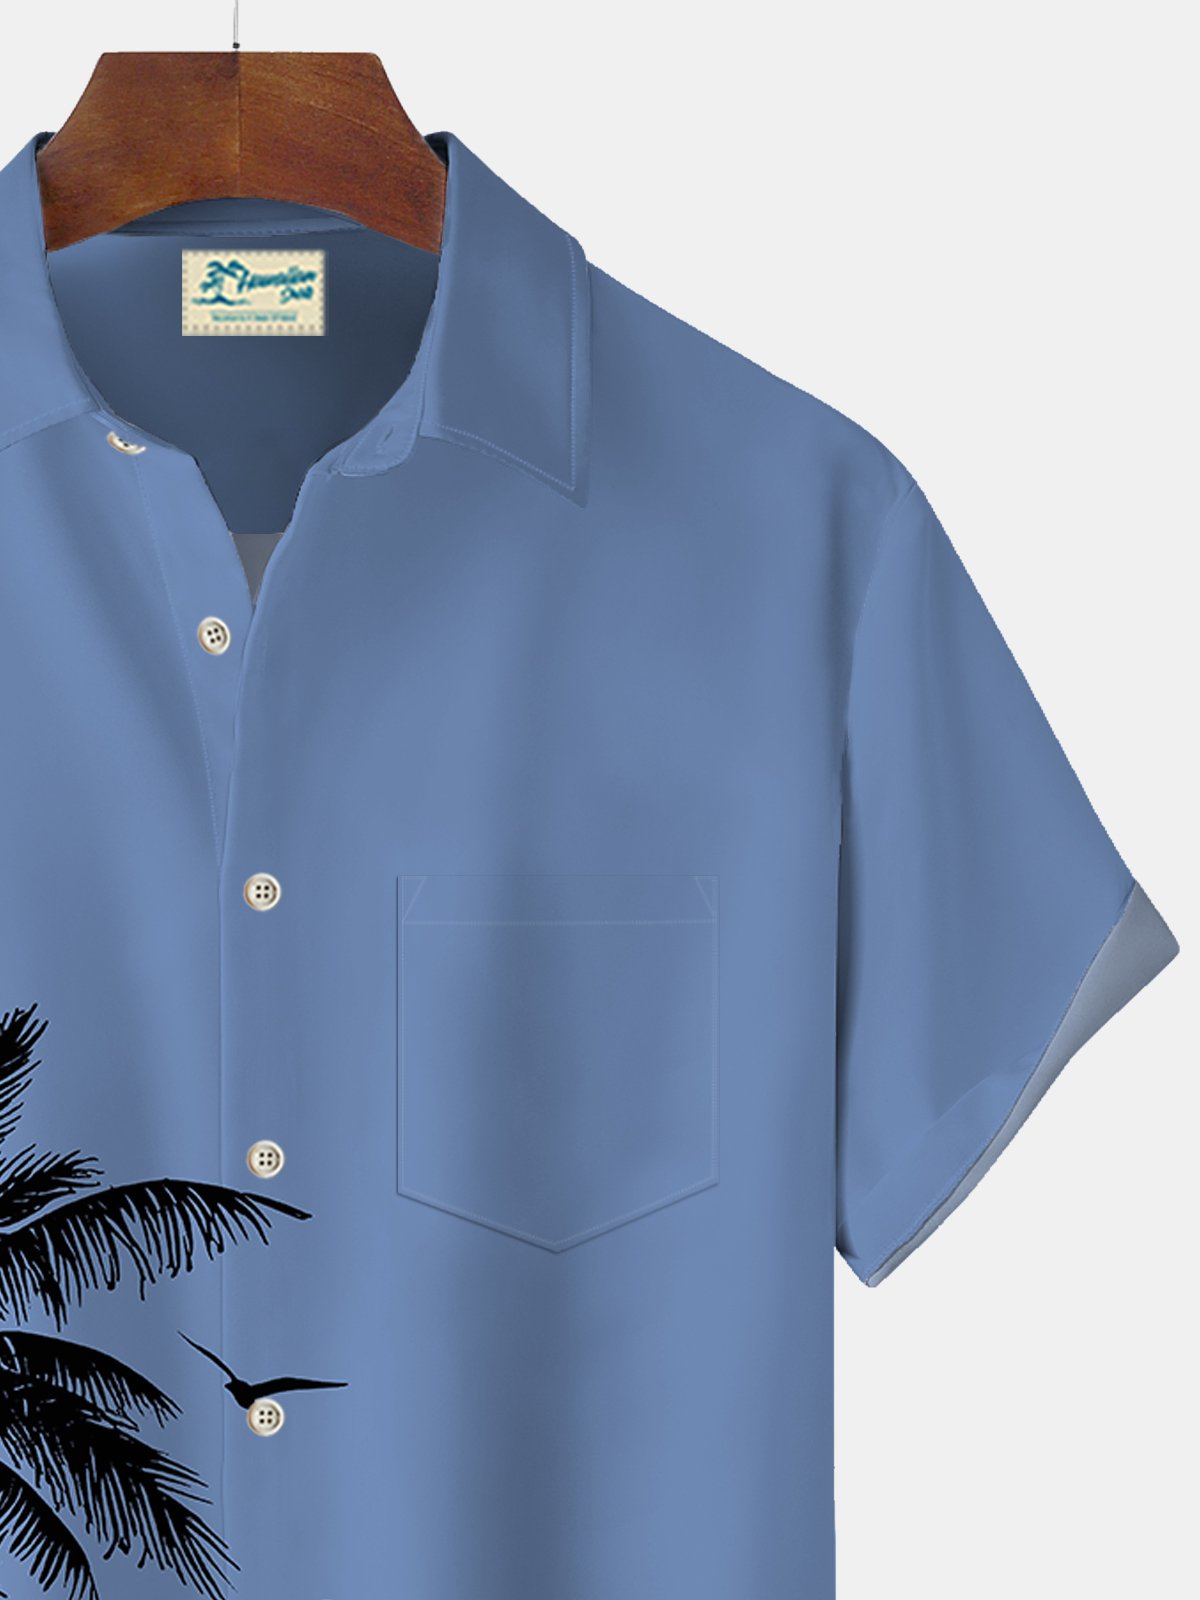 Royaura Coconut Tree Print Beach Men's Hawaiian Oversized Short Sleeve Shirt with Pockets